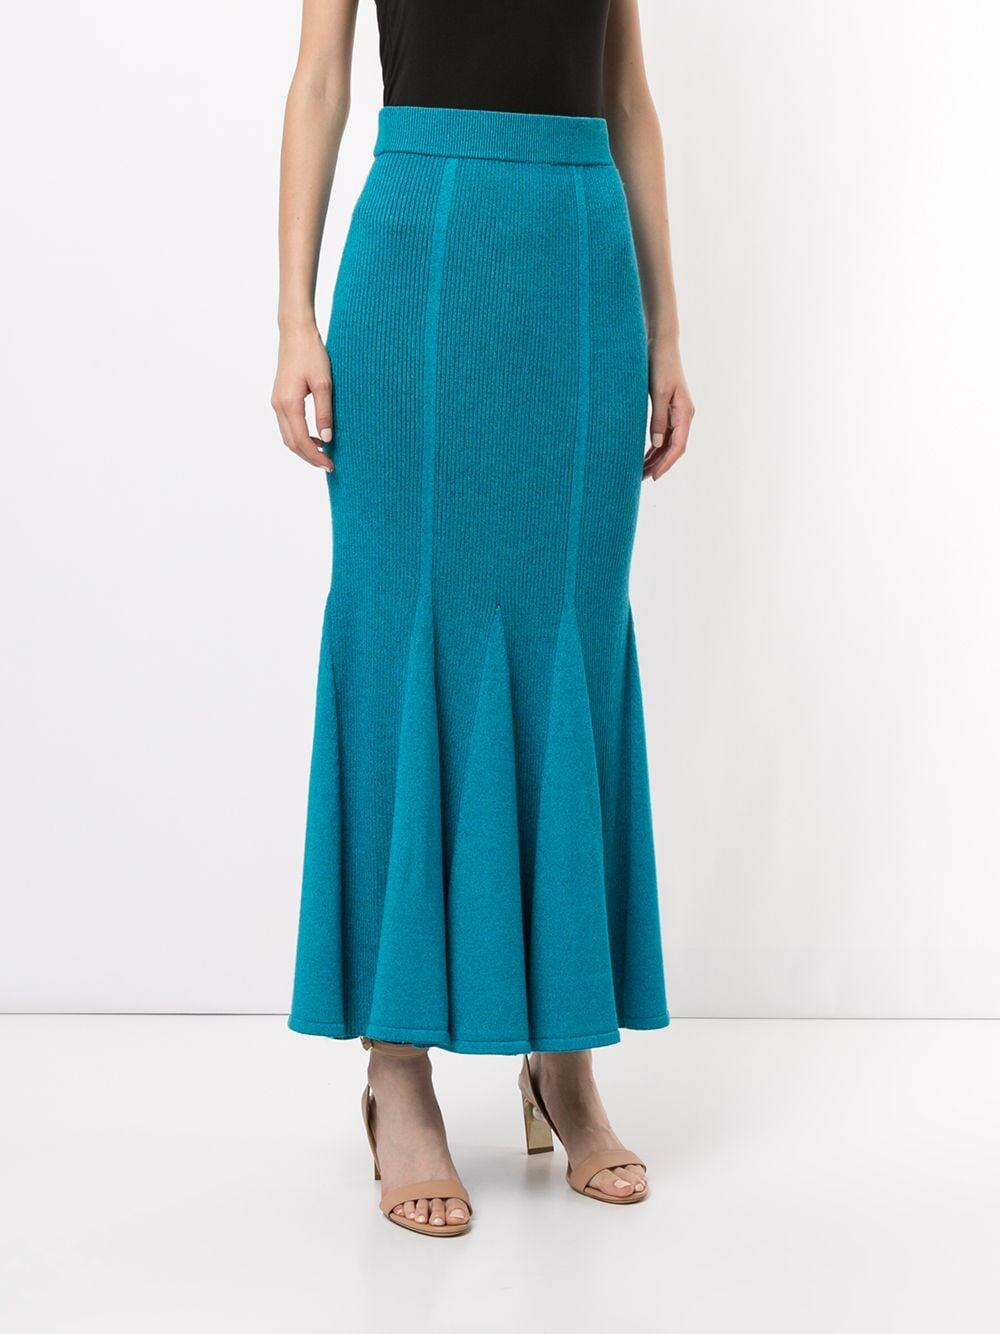 Carolina Herrera - Sky Blue Ribbed Knit Flare Skirt